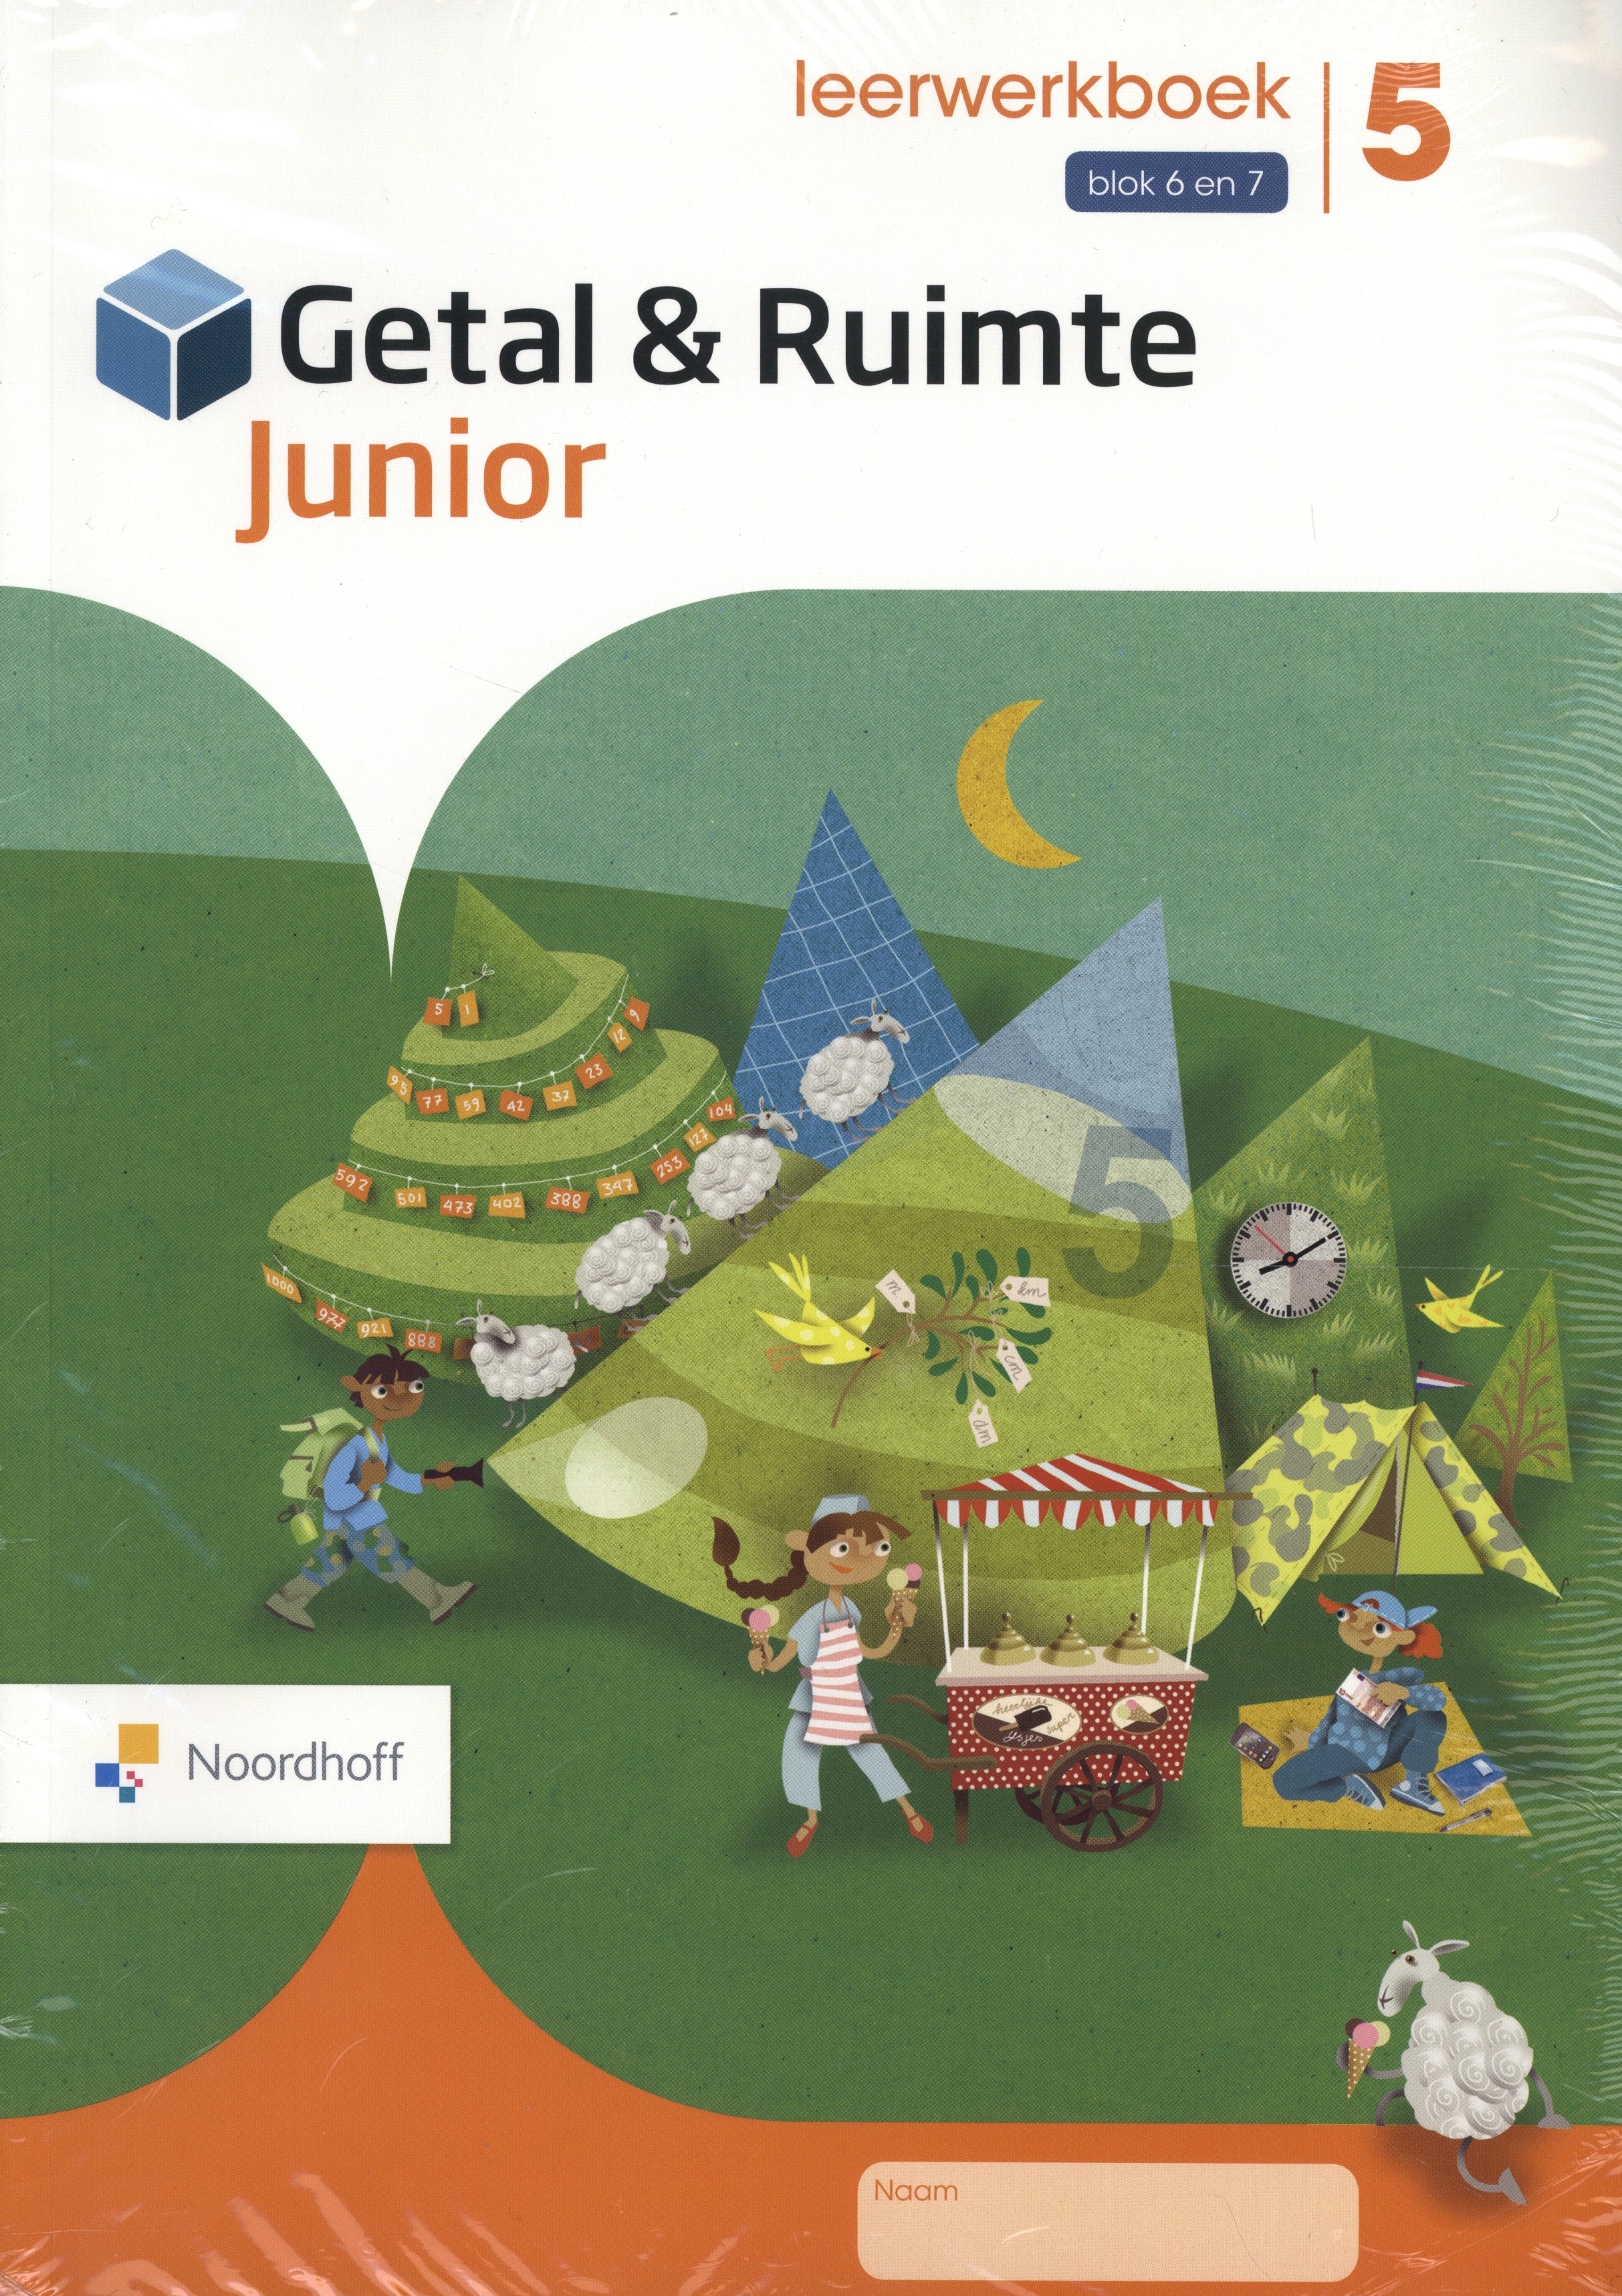 Getal & Ruimte Junior leerwerkboek groep 5 blok 6 en 7_set a 5